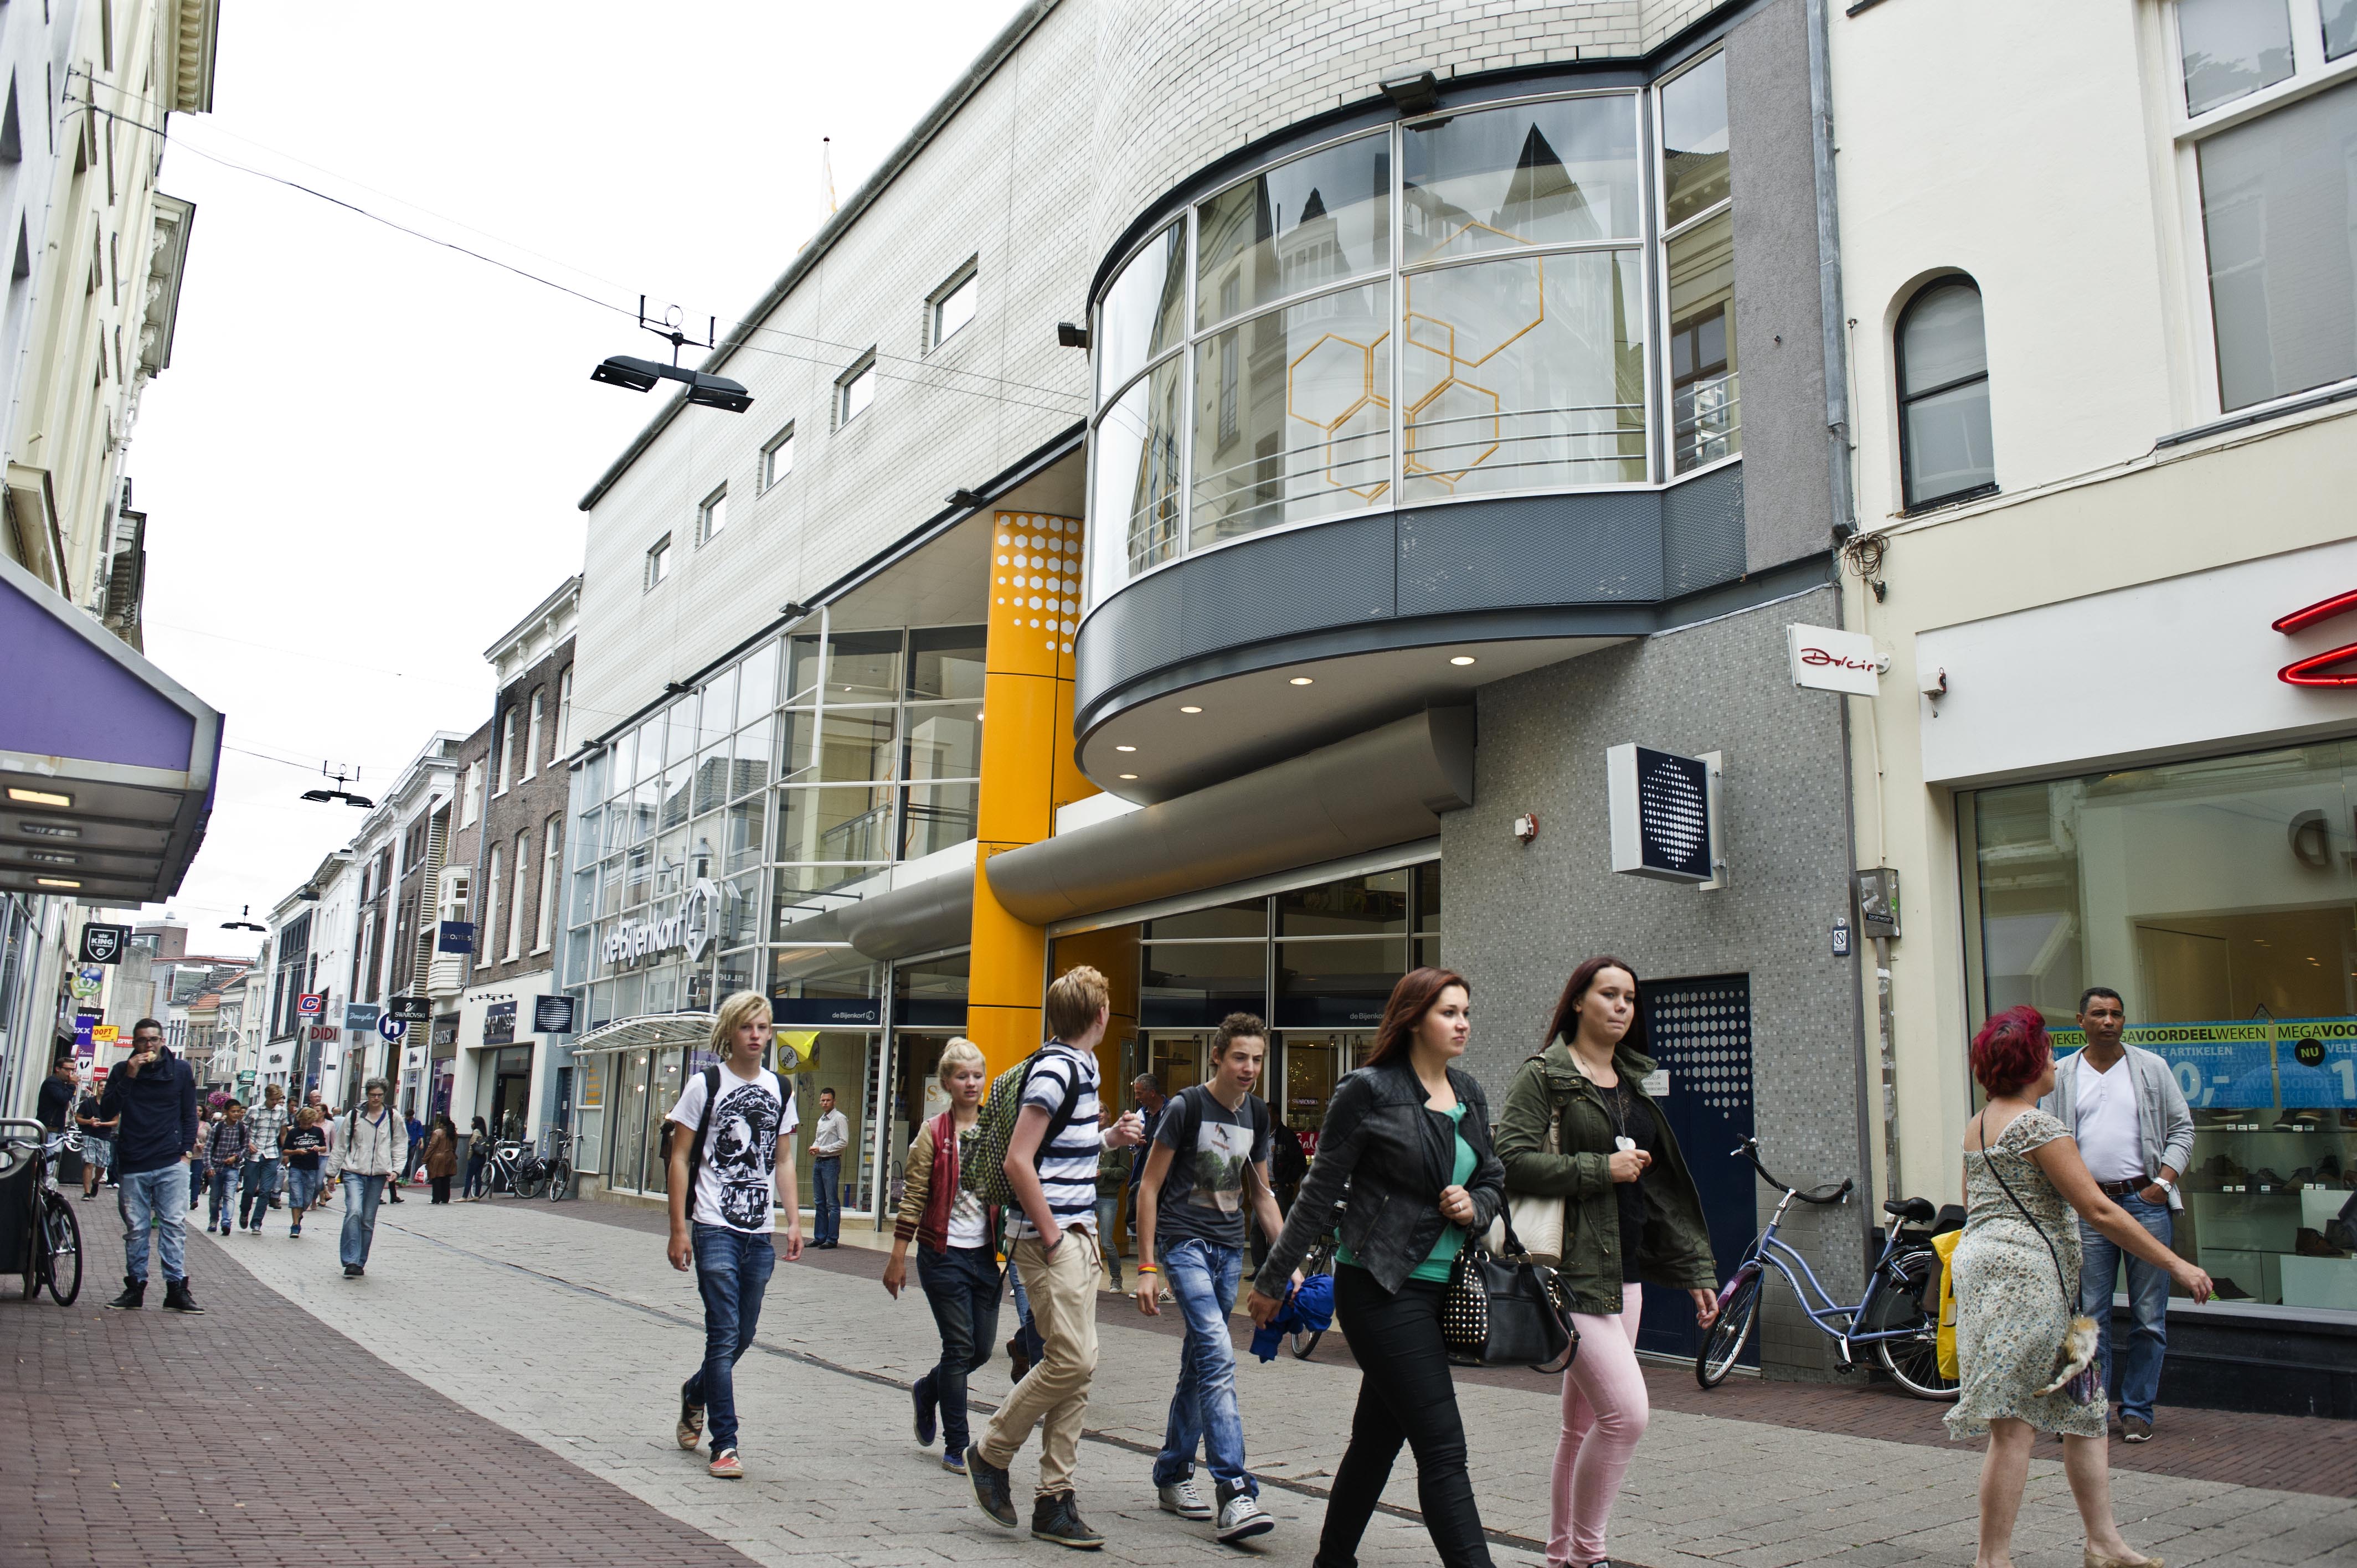 2013-08-19 12:05:38 ARNHEM - Het filiaal van de Bijenkorf aan de Ketelstraat. De warenhuisketen sluit 5 van de 12 winkels, waaronder die in Arnhem. In de overige winkels zal flink worden geinvesteerd. ANP KOEN VERHEIJDEN